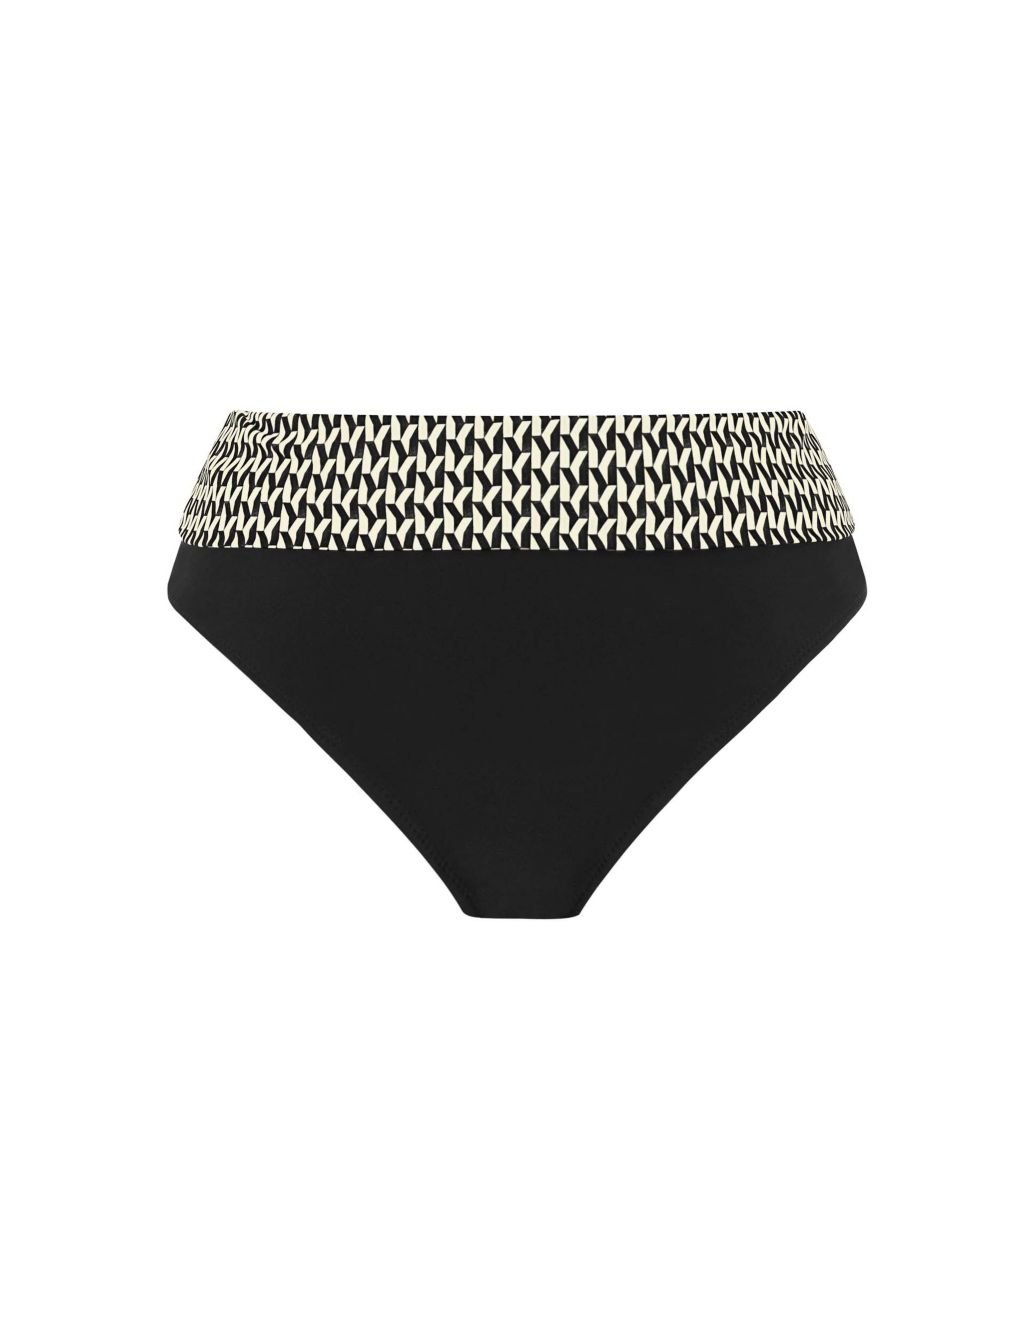 Koh Lipe Geometric Roll Top Bikini Bottoms image 2